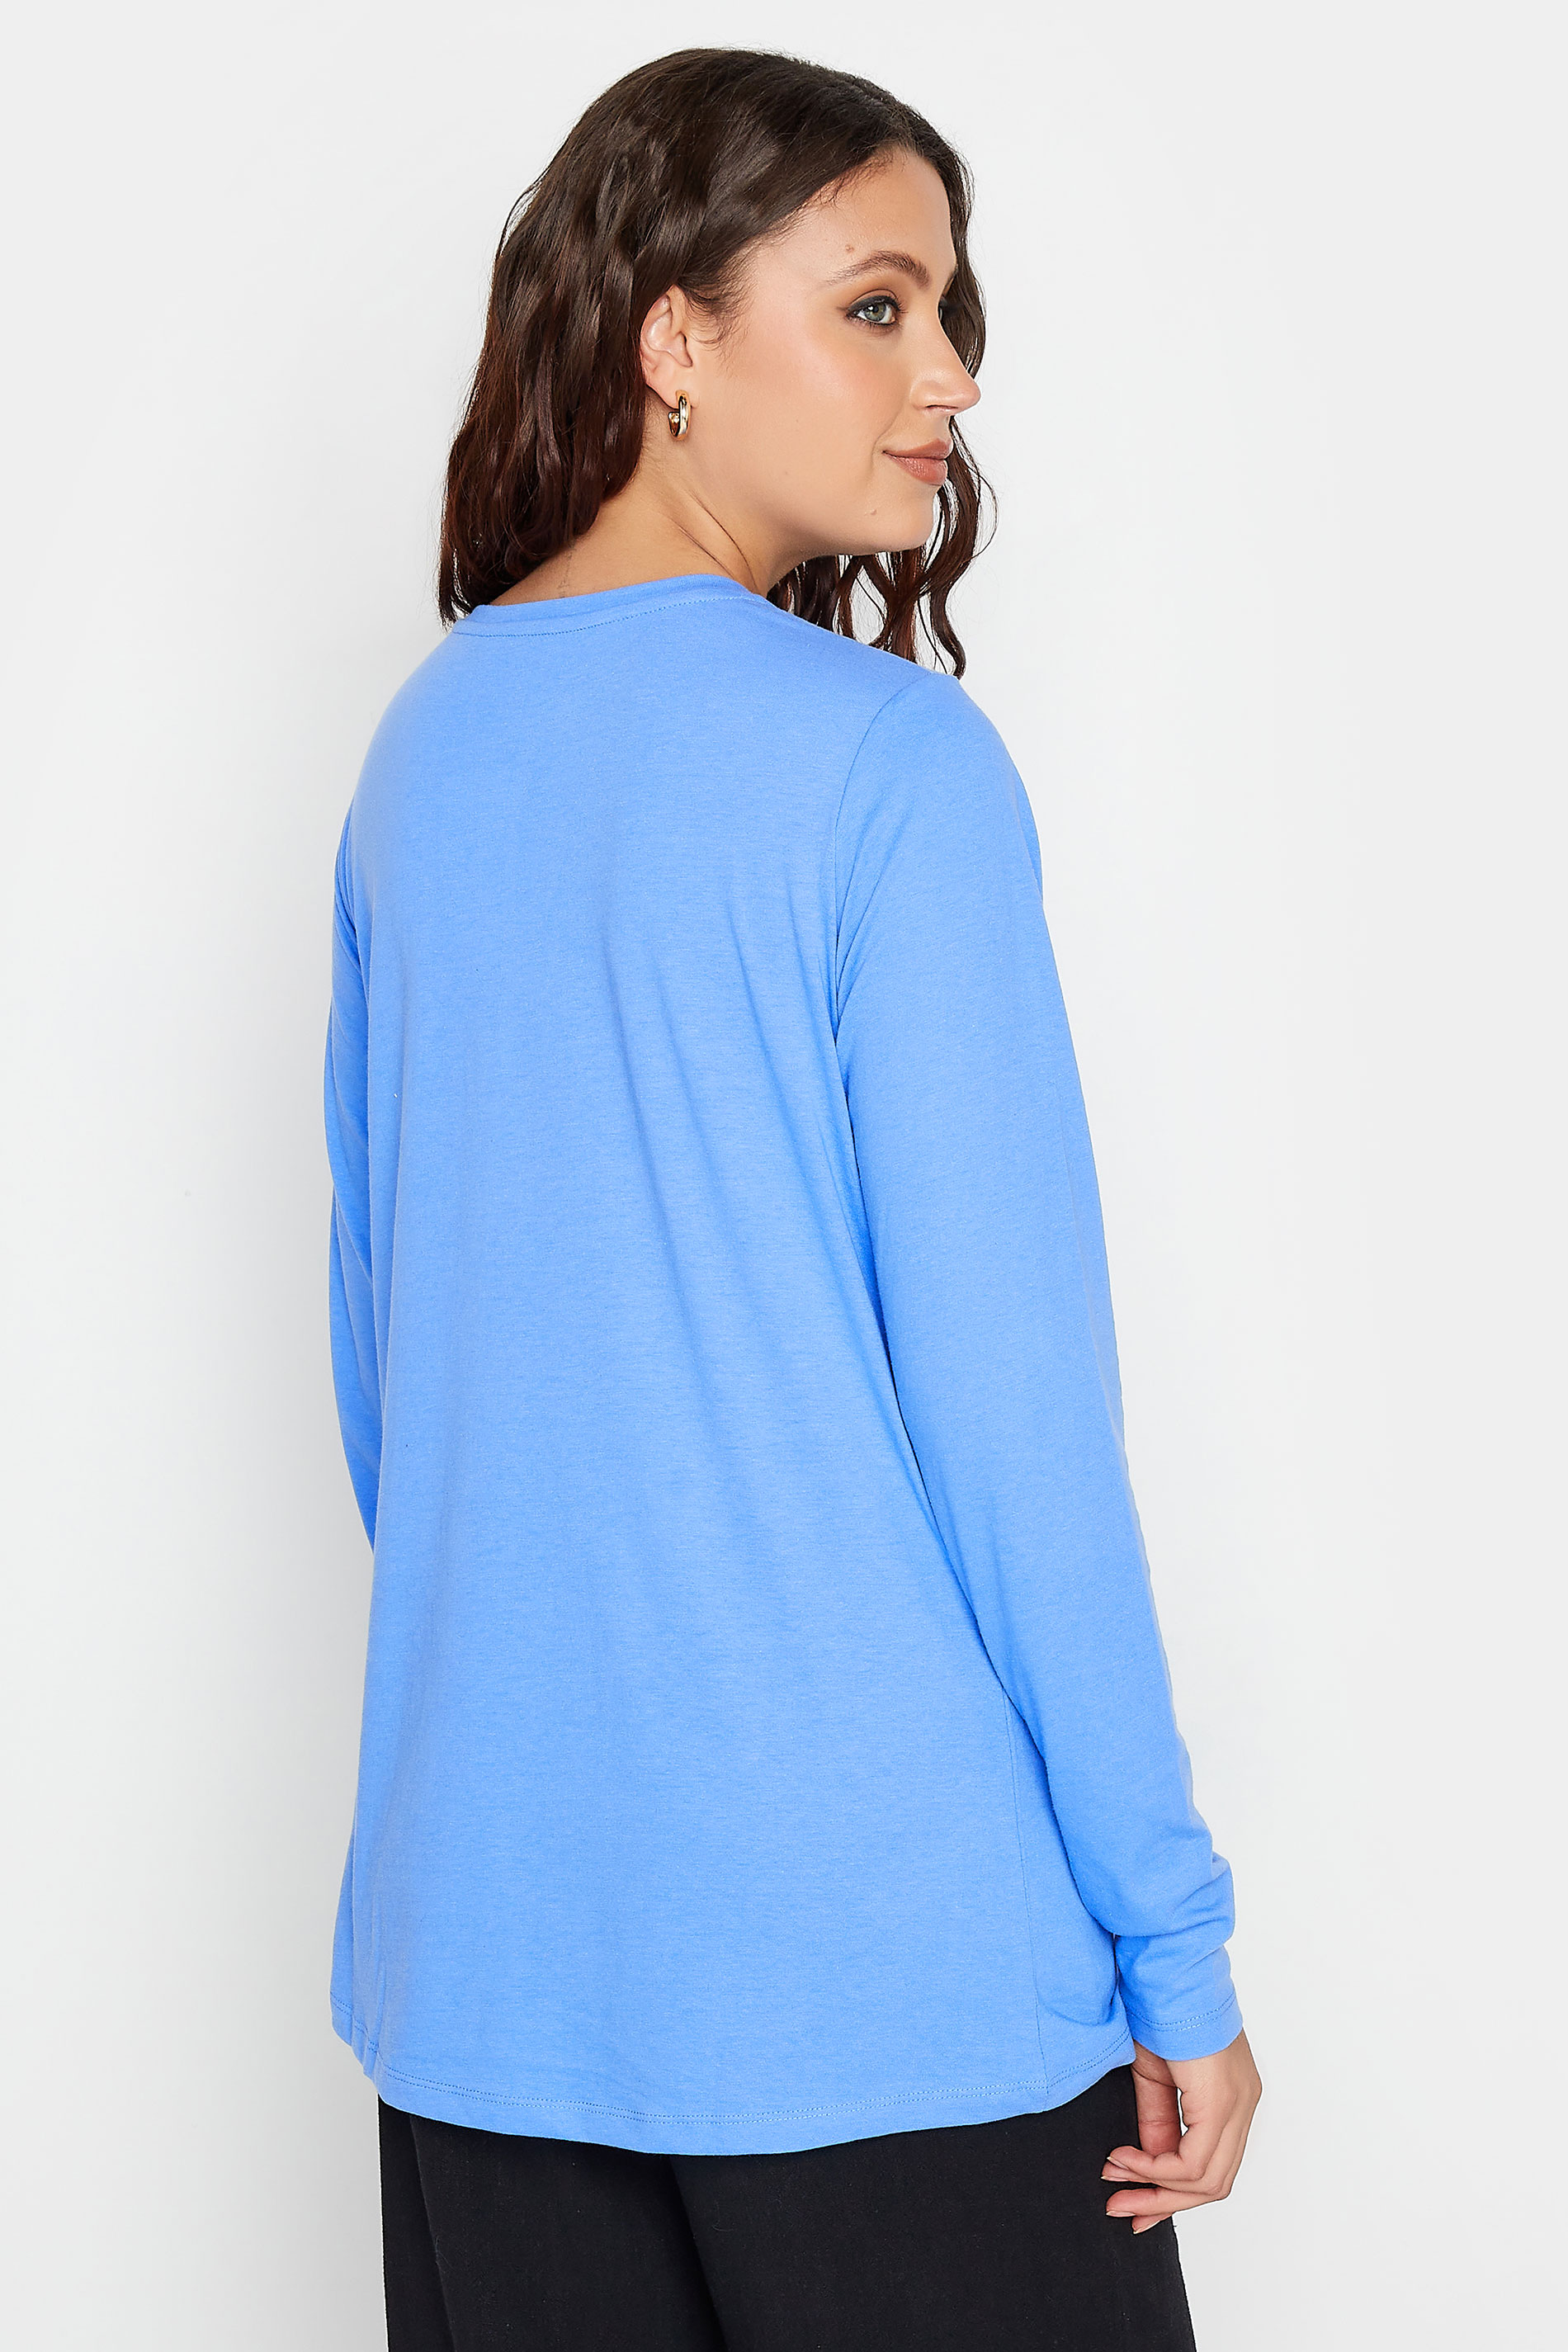 LTS Tall Women's Blue Dipped Hem T-Shirt | Long Tall Sally 3